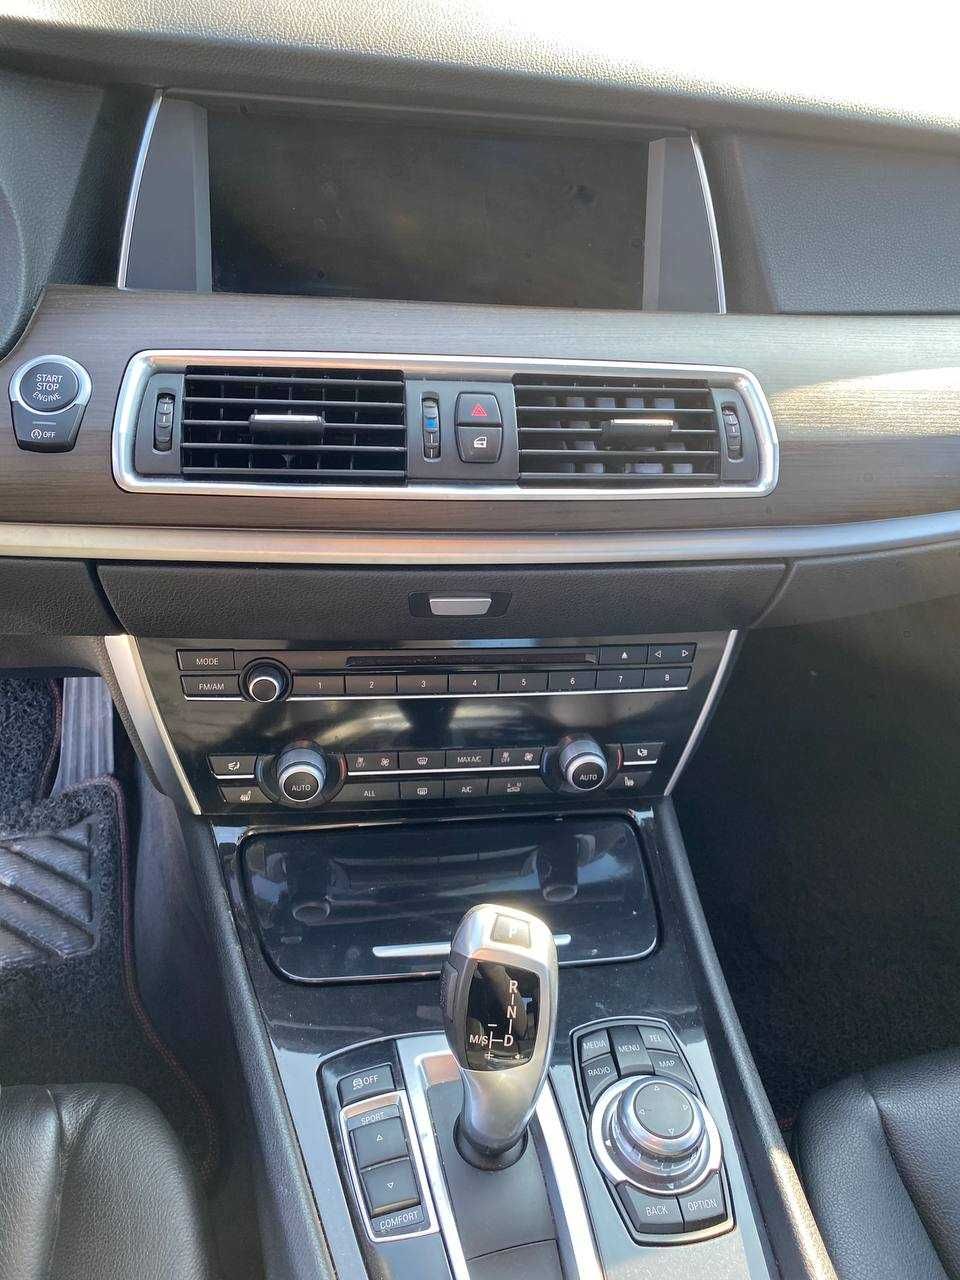 BMW 520 GT 2013 р.в., 2,0 дизель